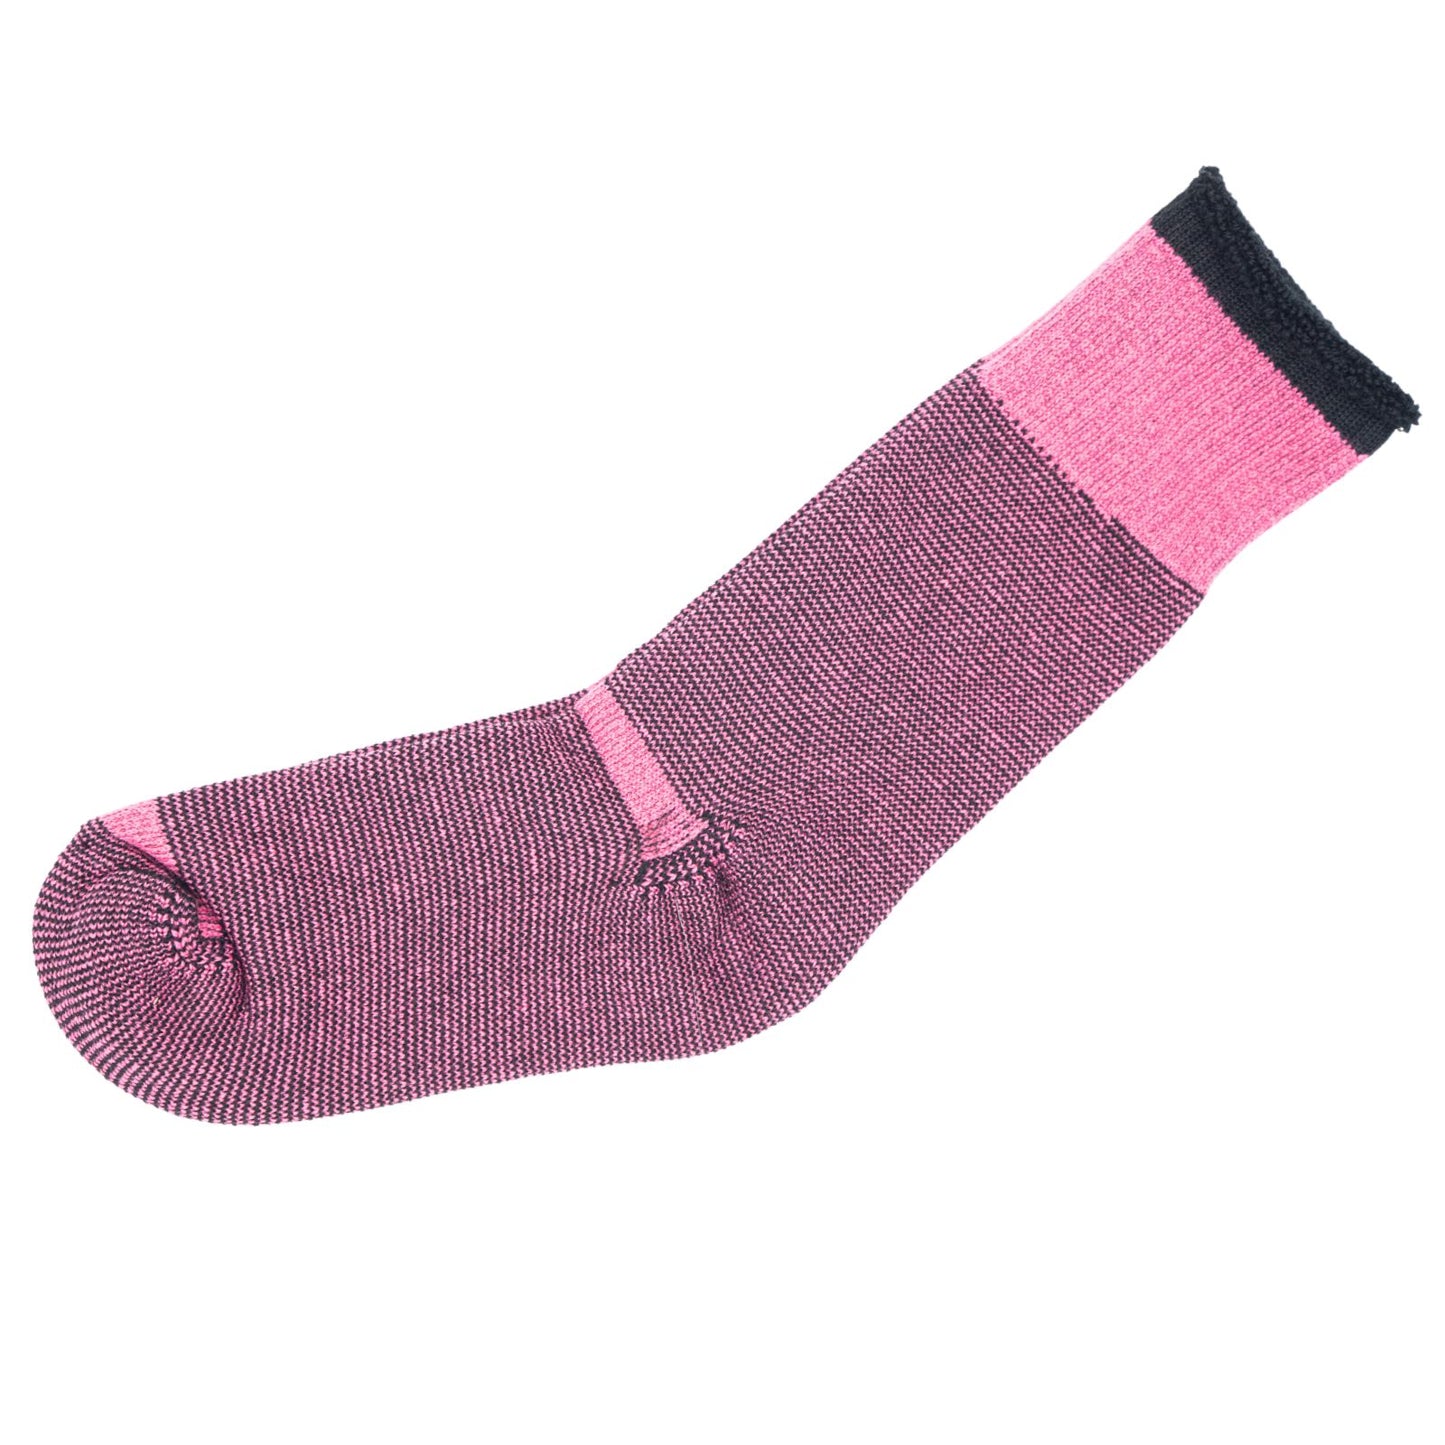 New Ladies 12 Pairs Merino Wool Socks Hiking Home Double Thickness